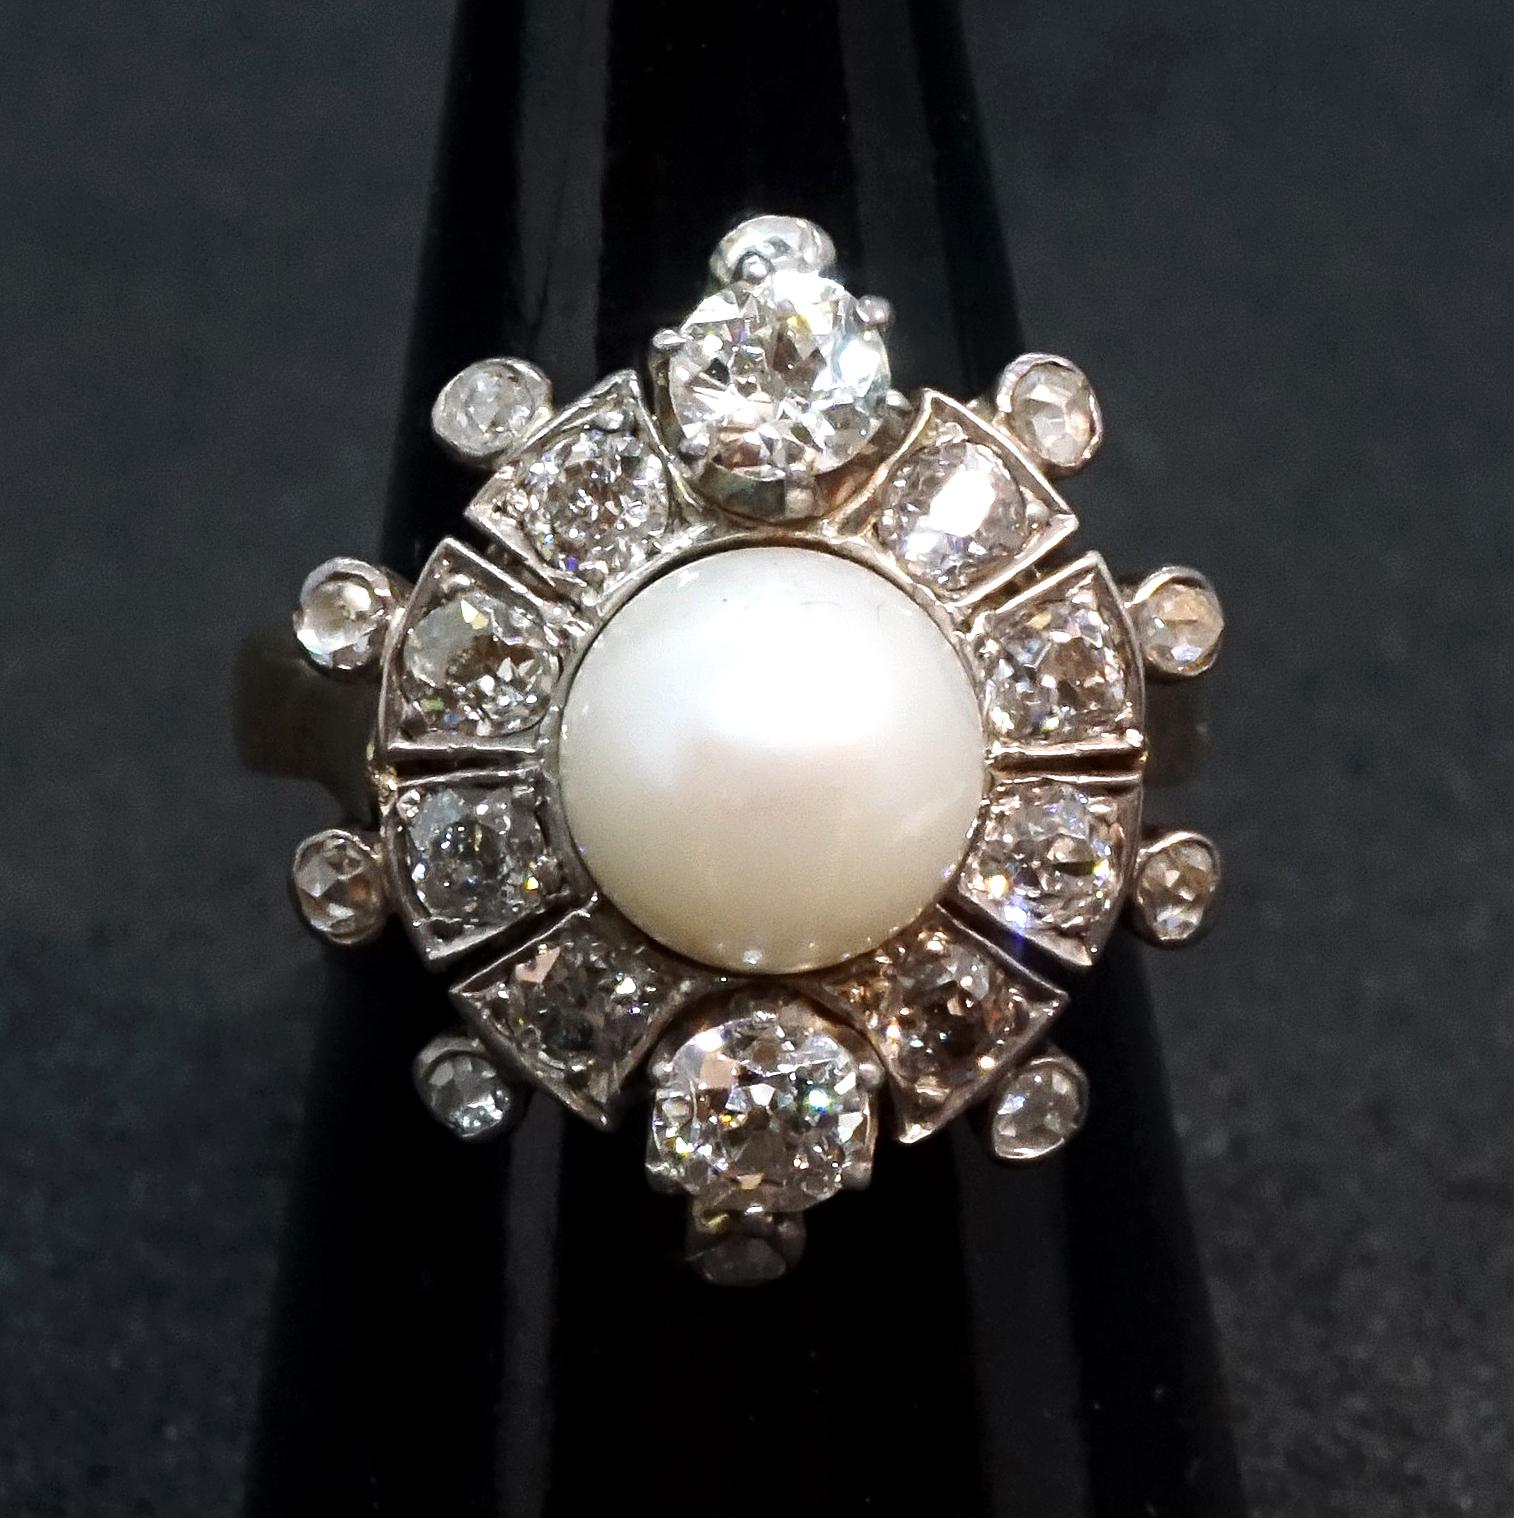 Antiker blumenförmiger alter Brillantring mit einer Perle in der Mitte:
zwei alte Diamanten im Brillantschliff auf einer Linie mit einer 0,7 cm großen Perle, deren Gewicht auf je 0,25 ct geschätzt wird (insgesamt 0,5 ct), dazwischen weitere acht